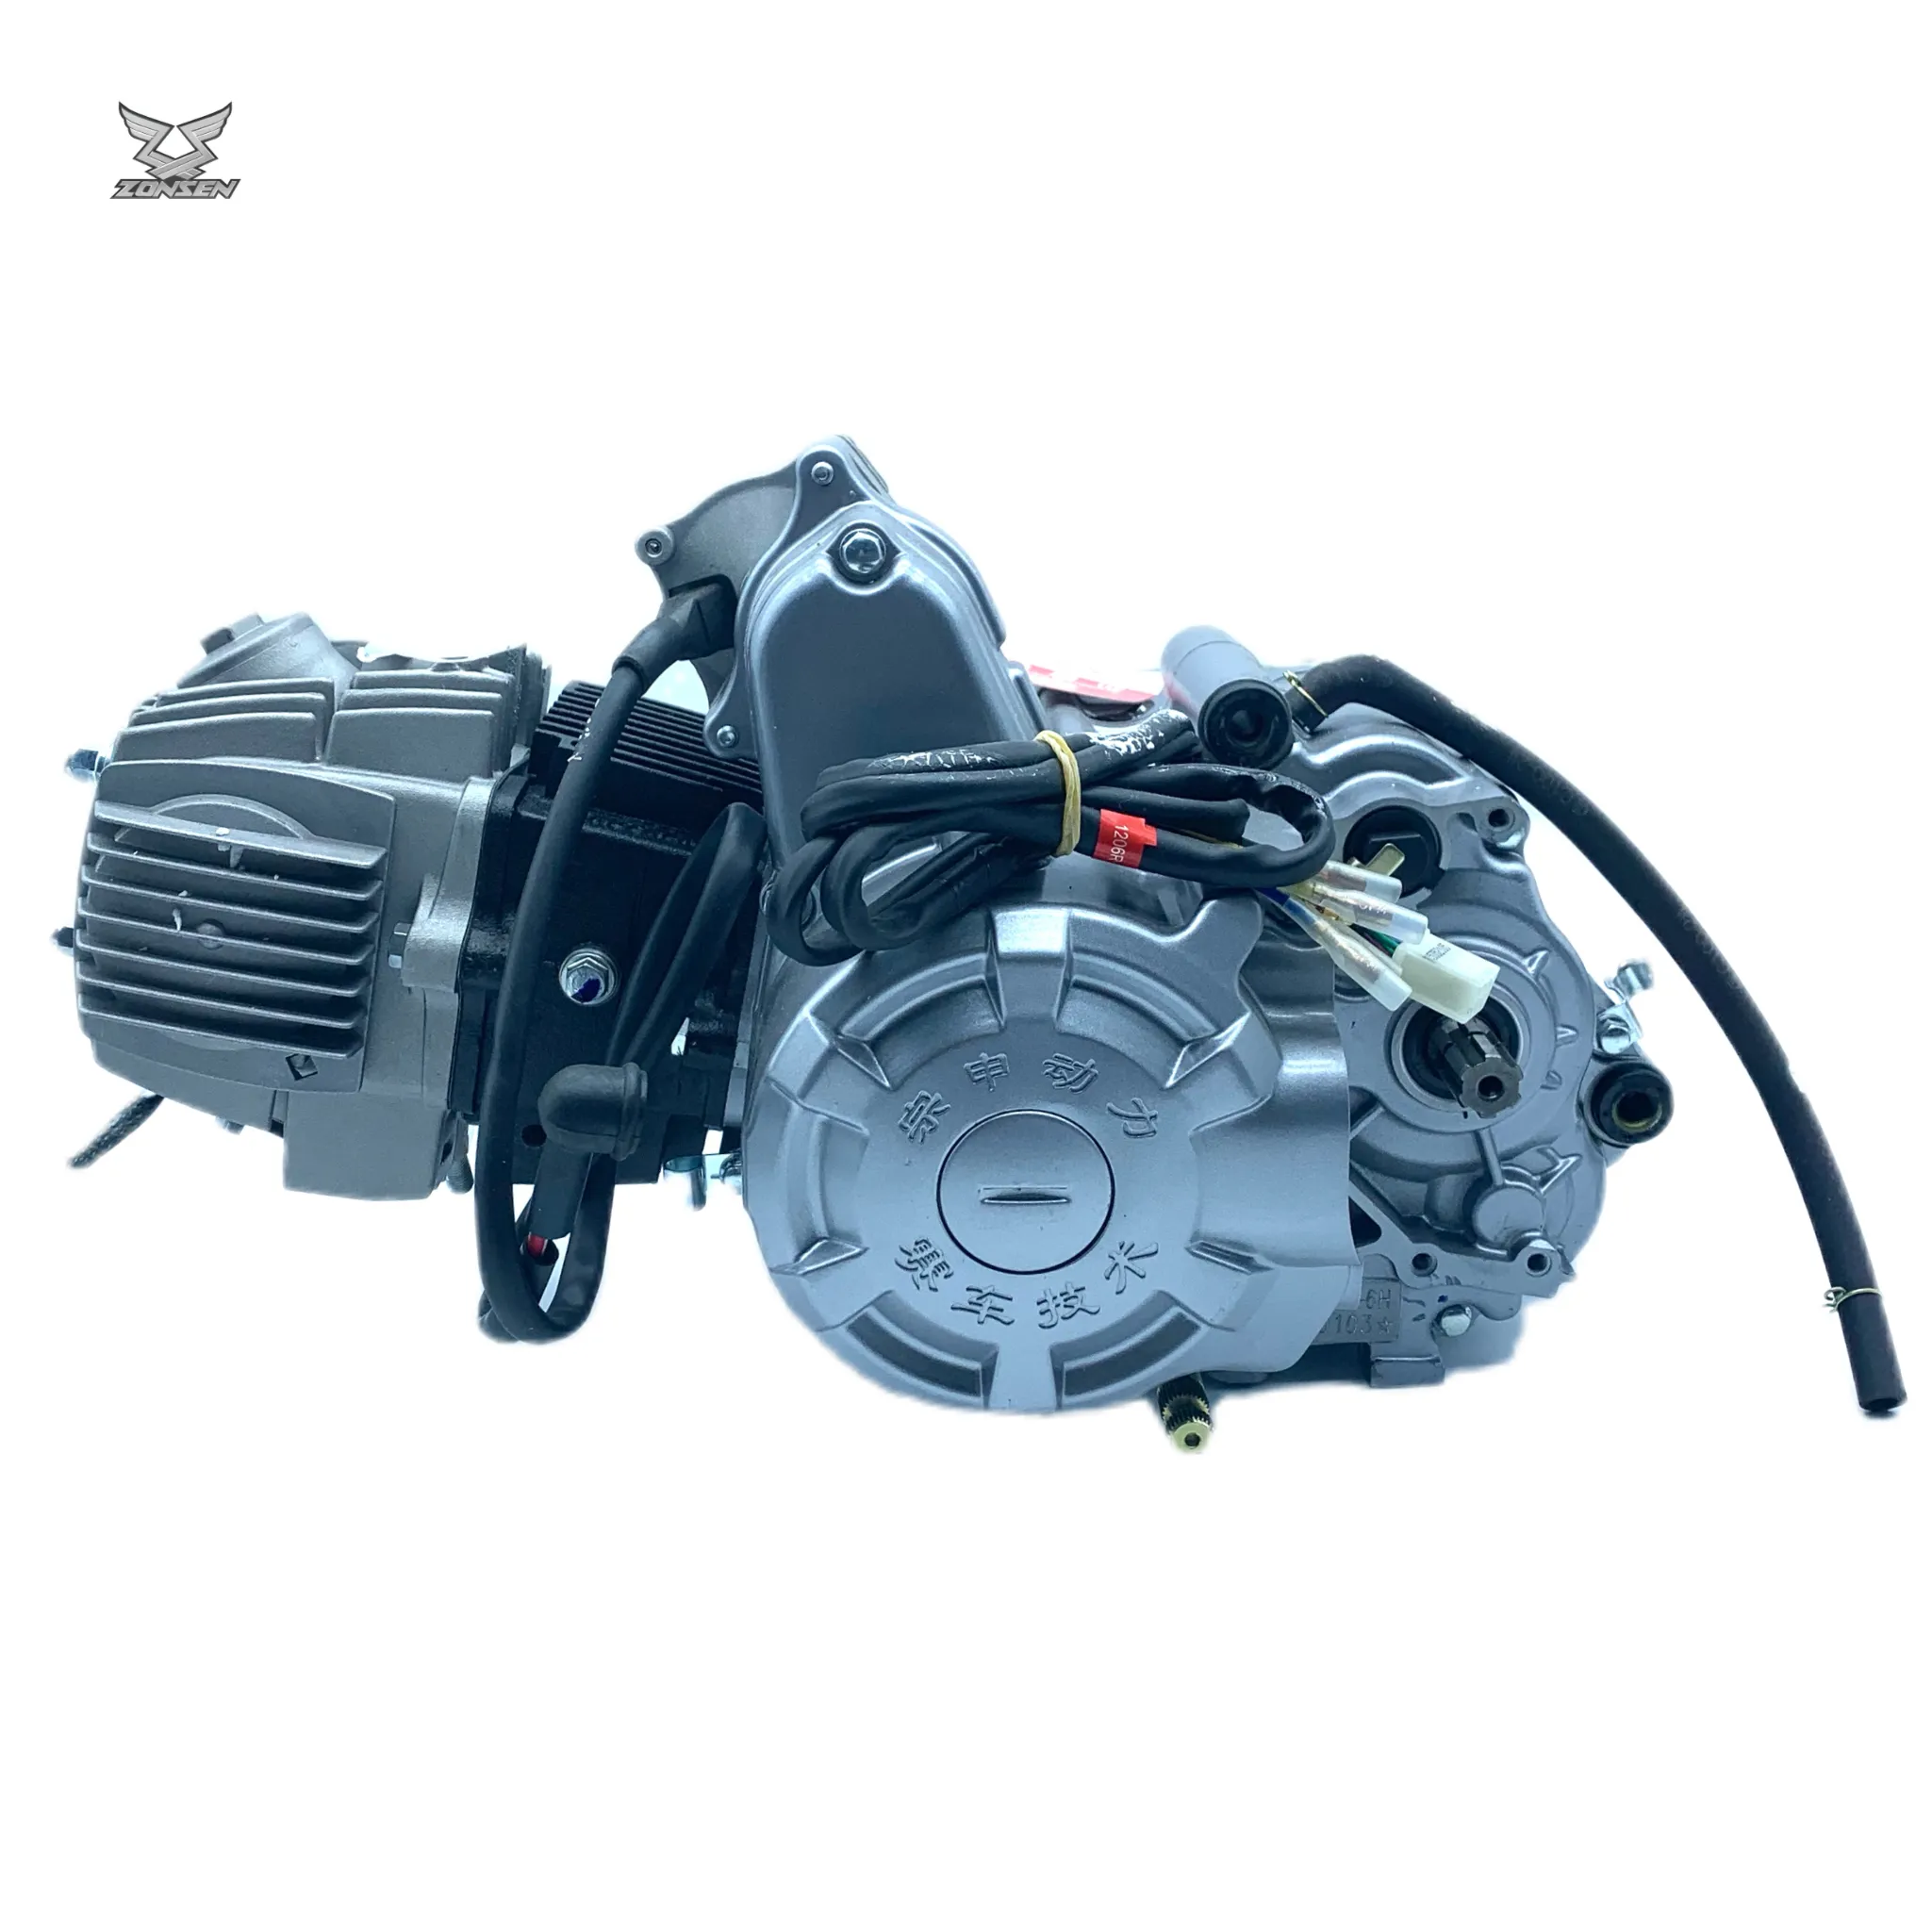 OEM Zongshen motorcycle engine assembly C110 Horizontal engine 110cc for Suzuki Honda Bike Motorbike Parts